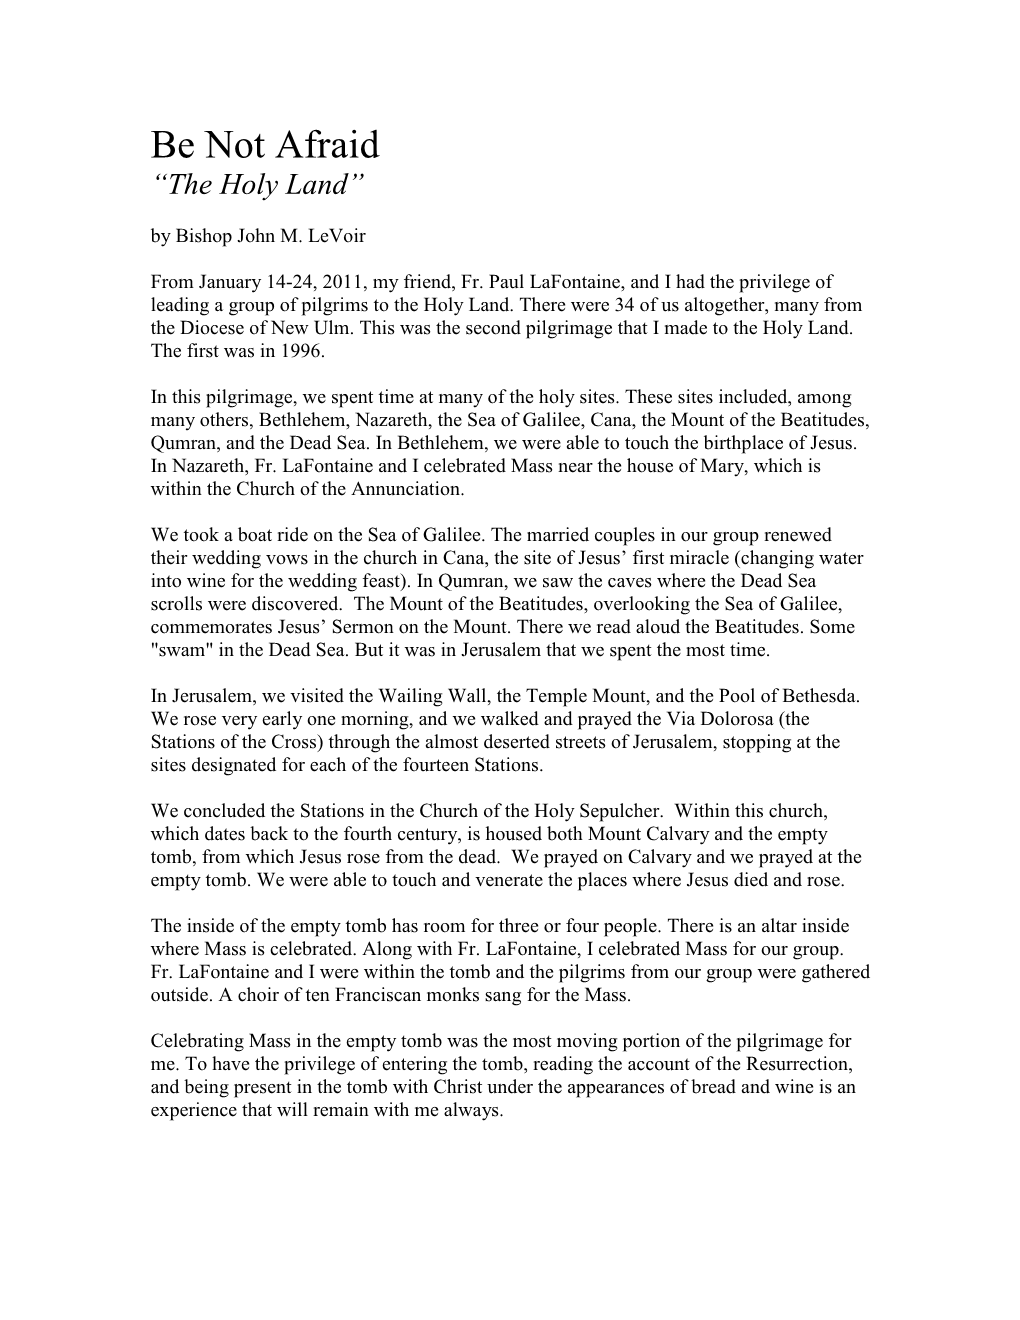 The Holy Land” by Bishop John M